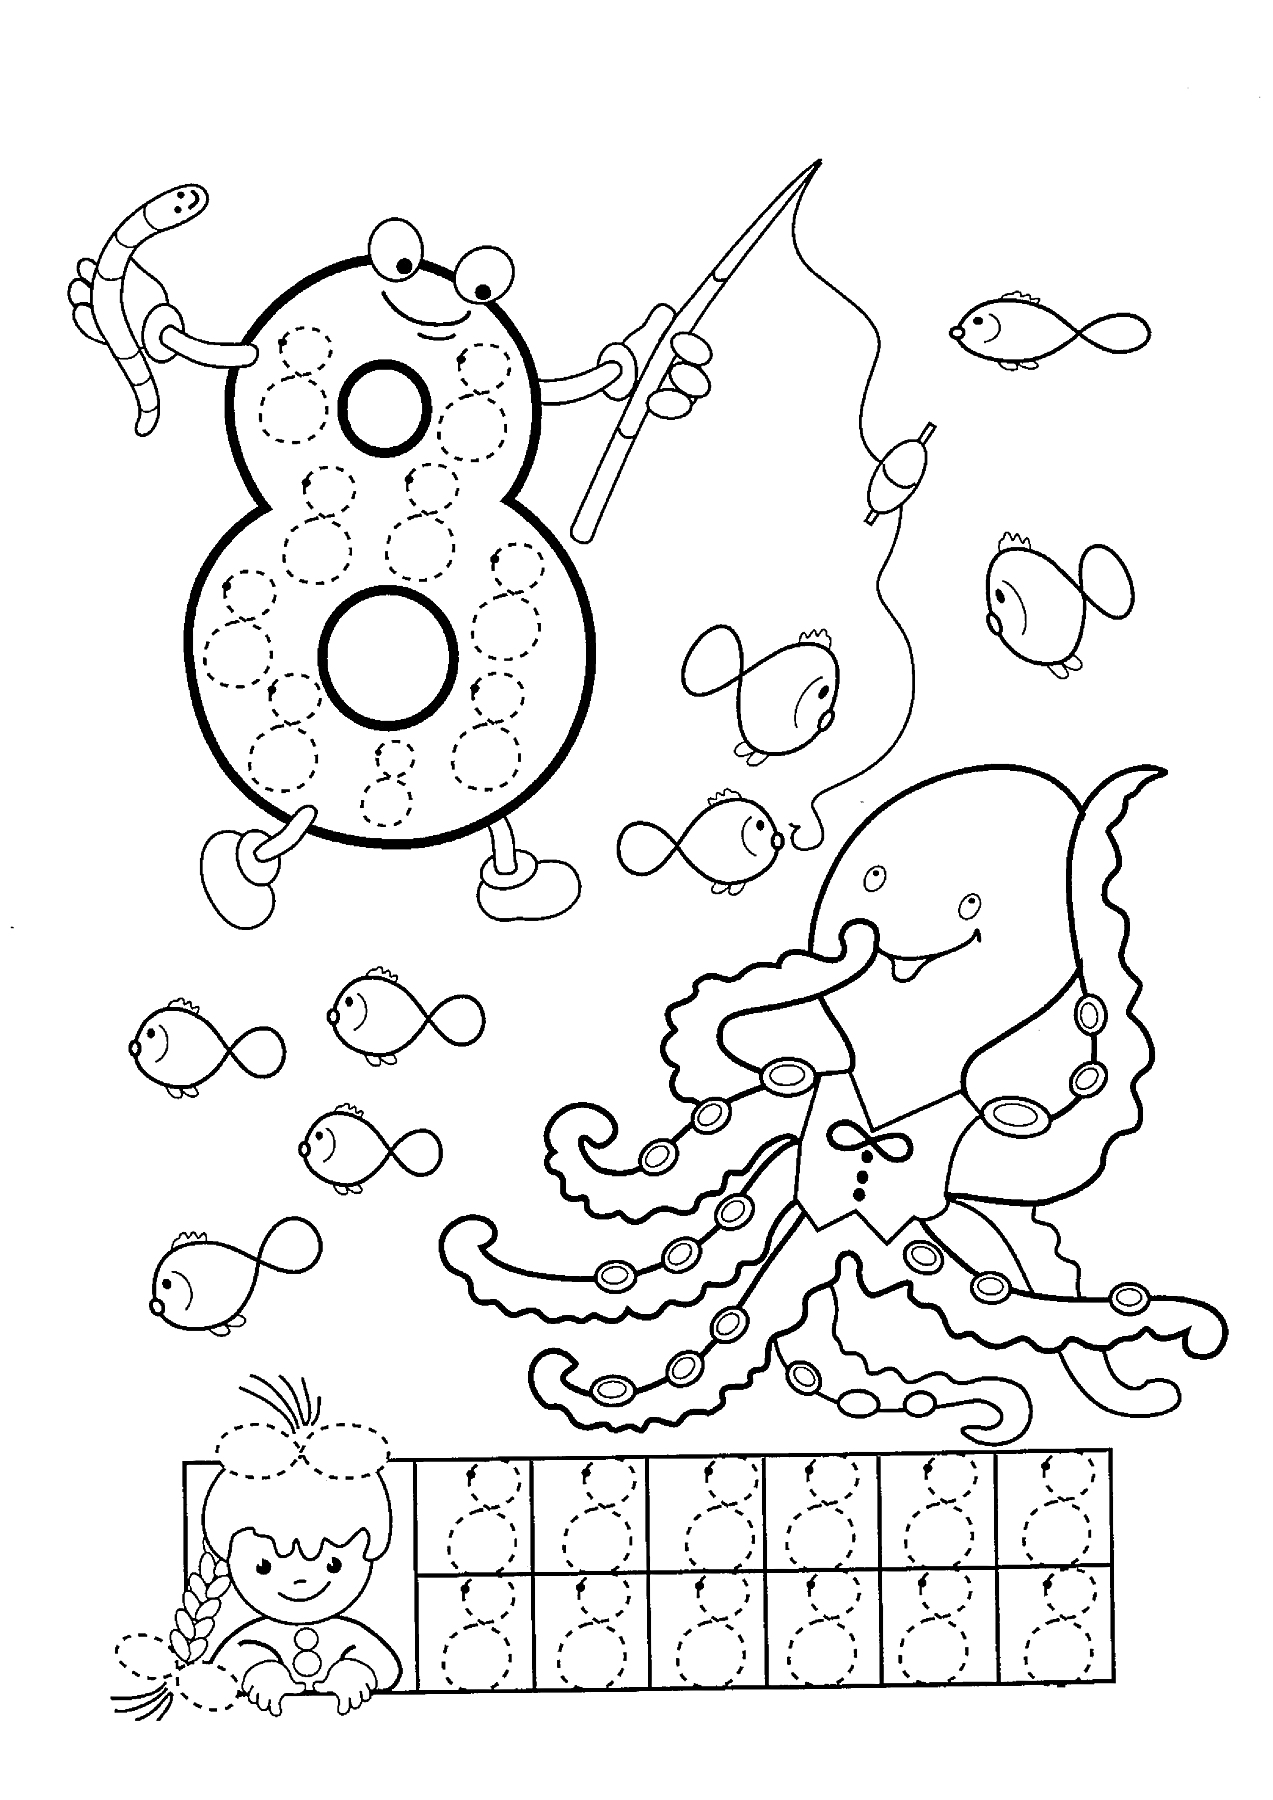 Раскраска Цифра 8 с рыбаком, рыбками, осьминогом и мальчиком